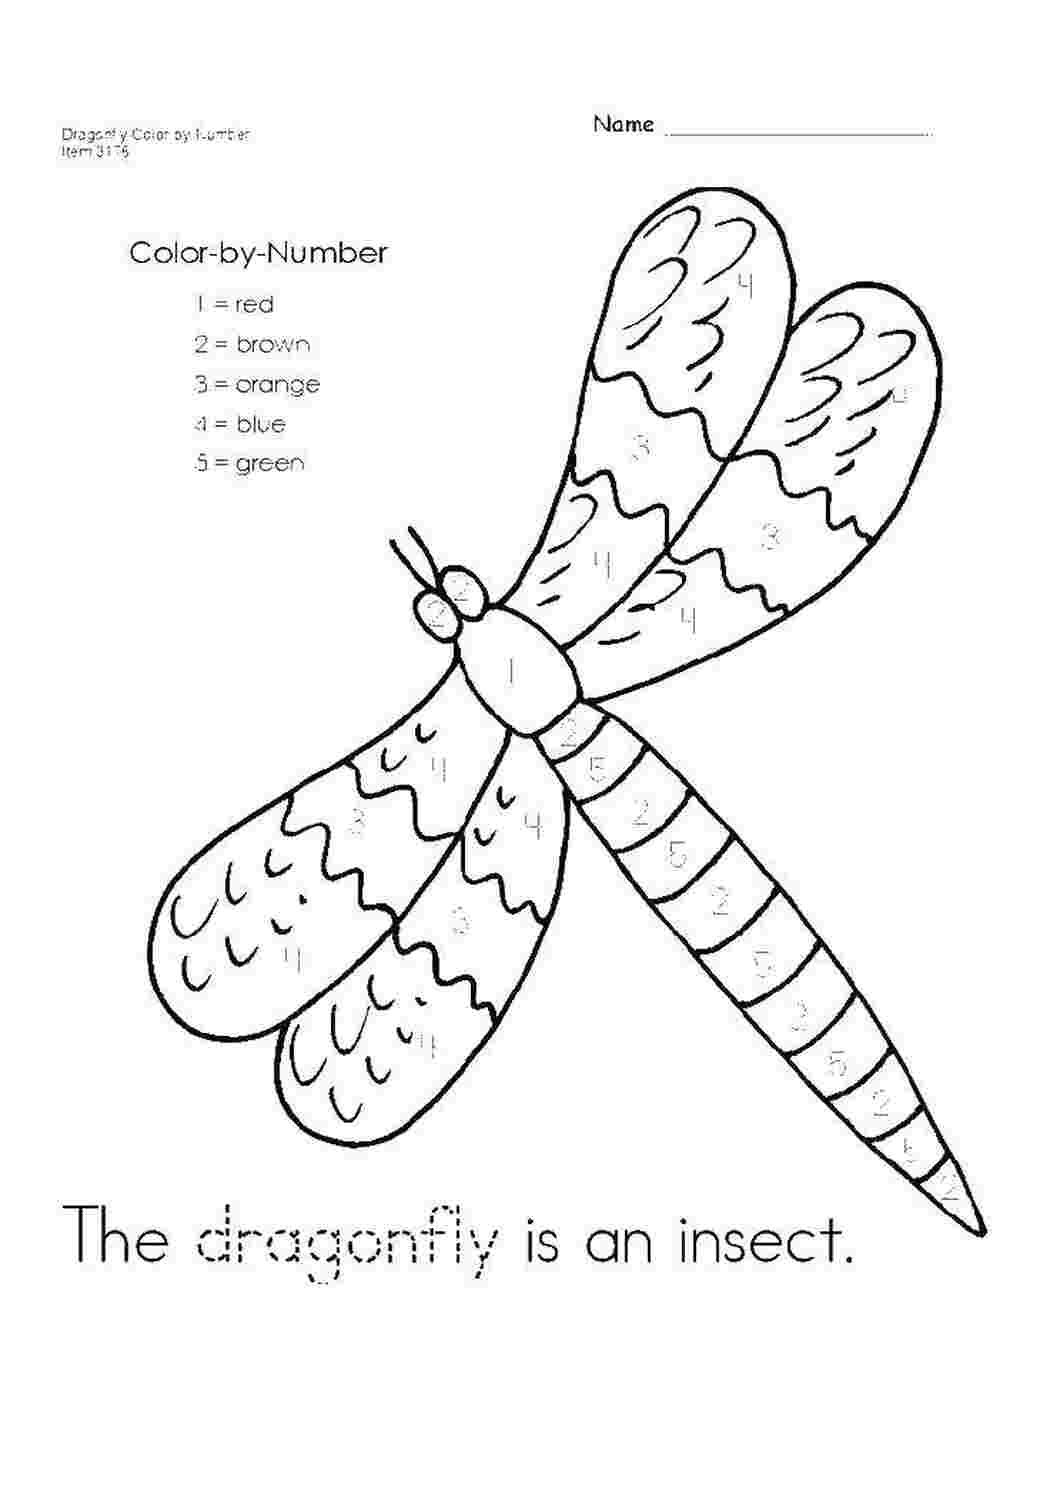 Задания для детей по английскому на тему насекомые